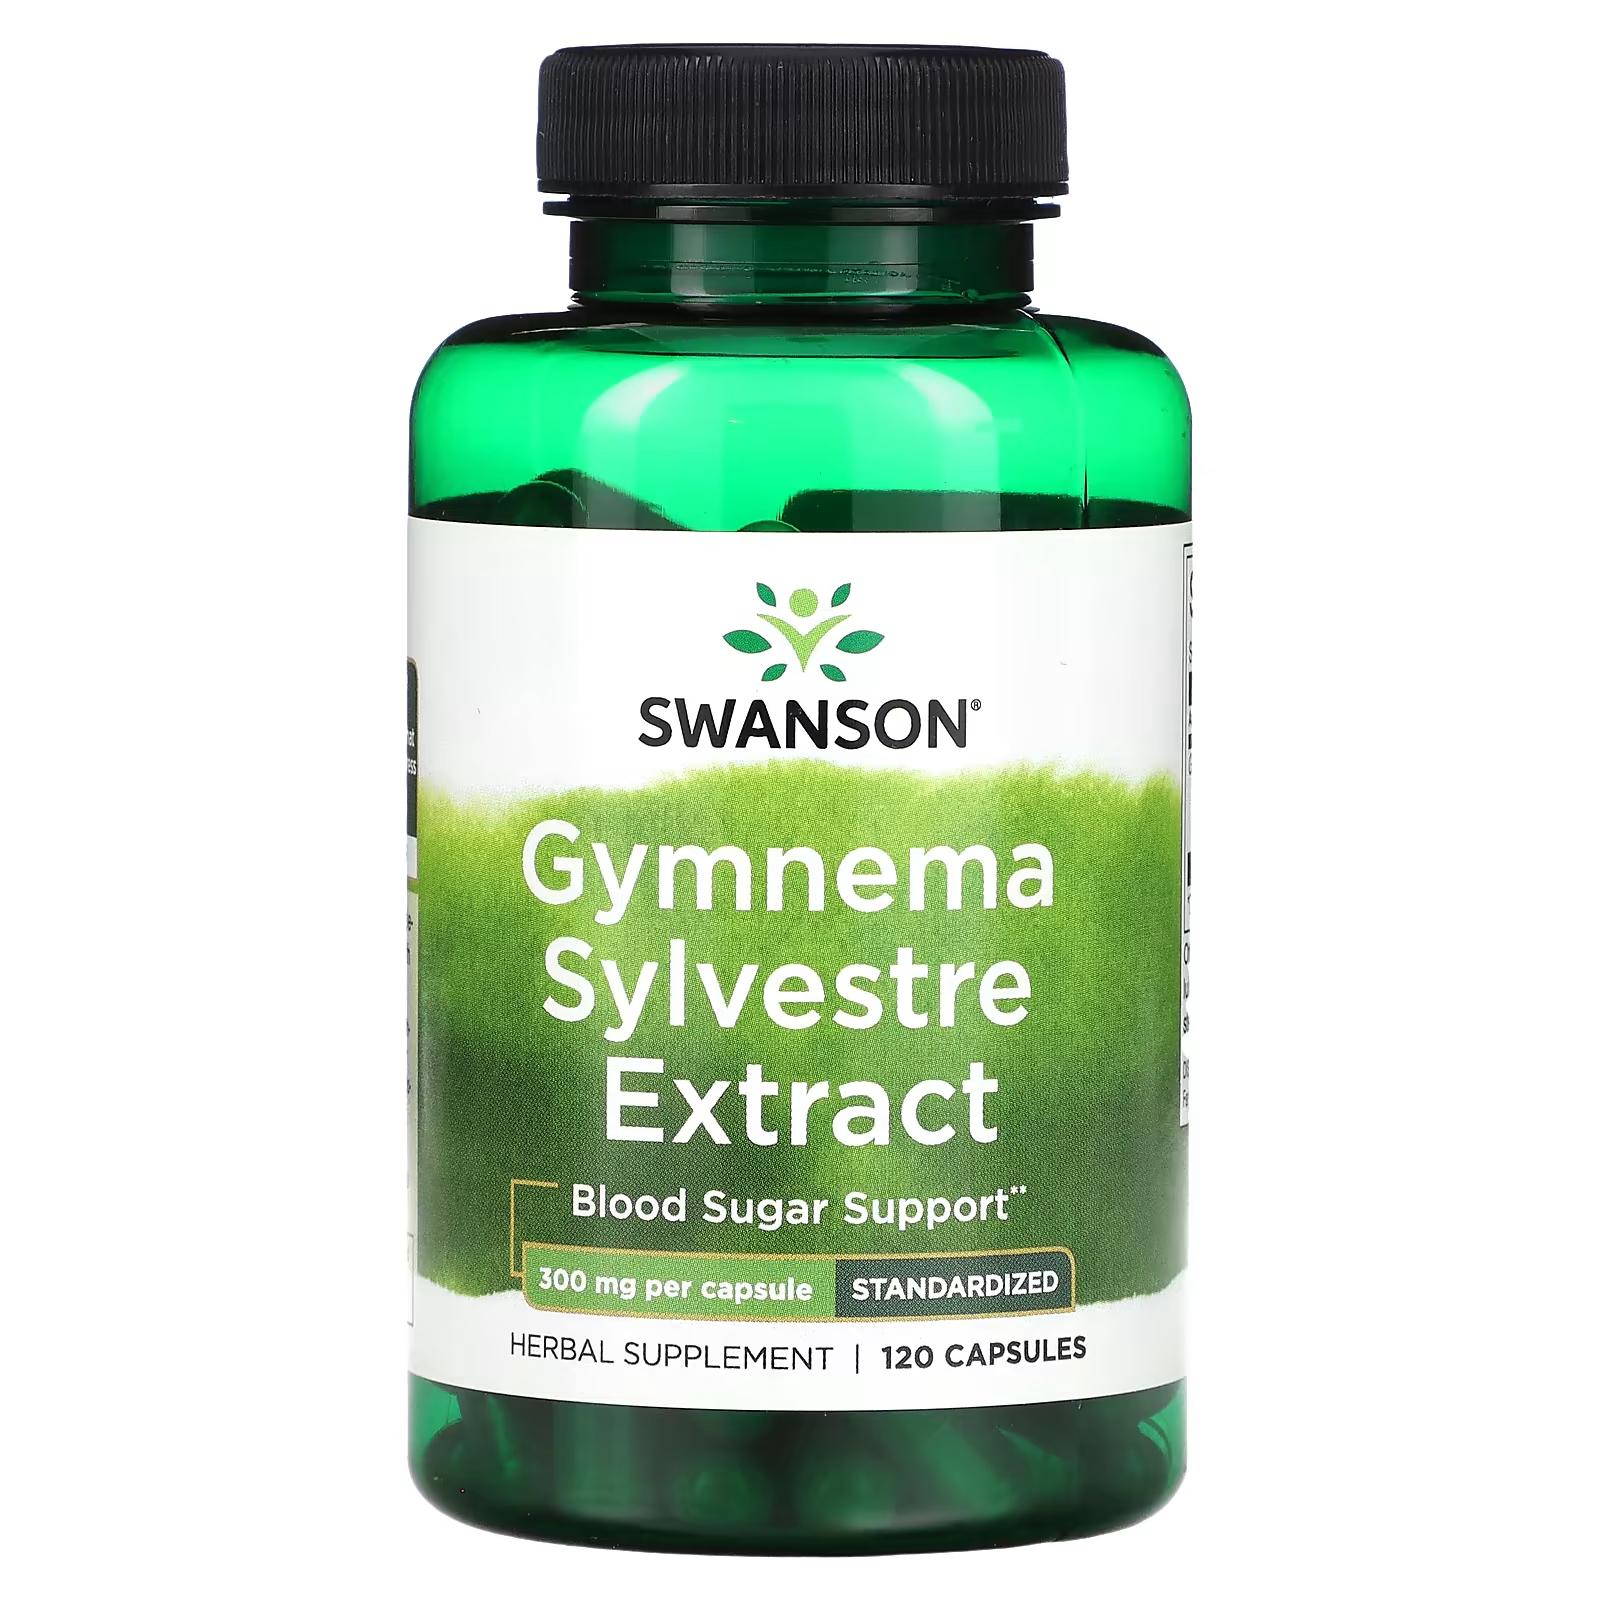 Экстракт Swanson Gymnema Sylvestre для поддержания глюкозы в крови, 120 капсул